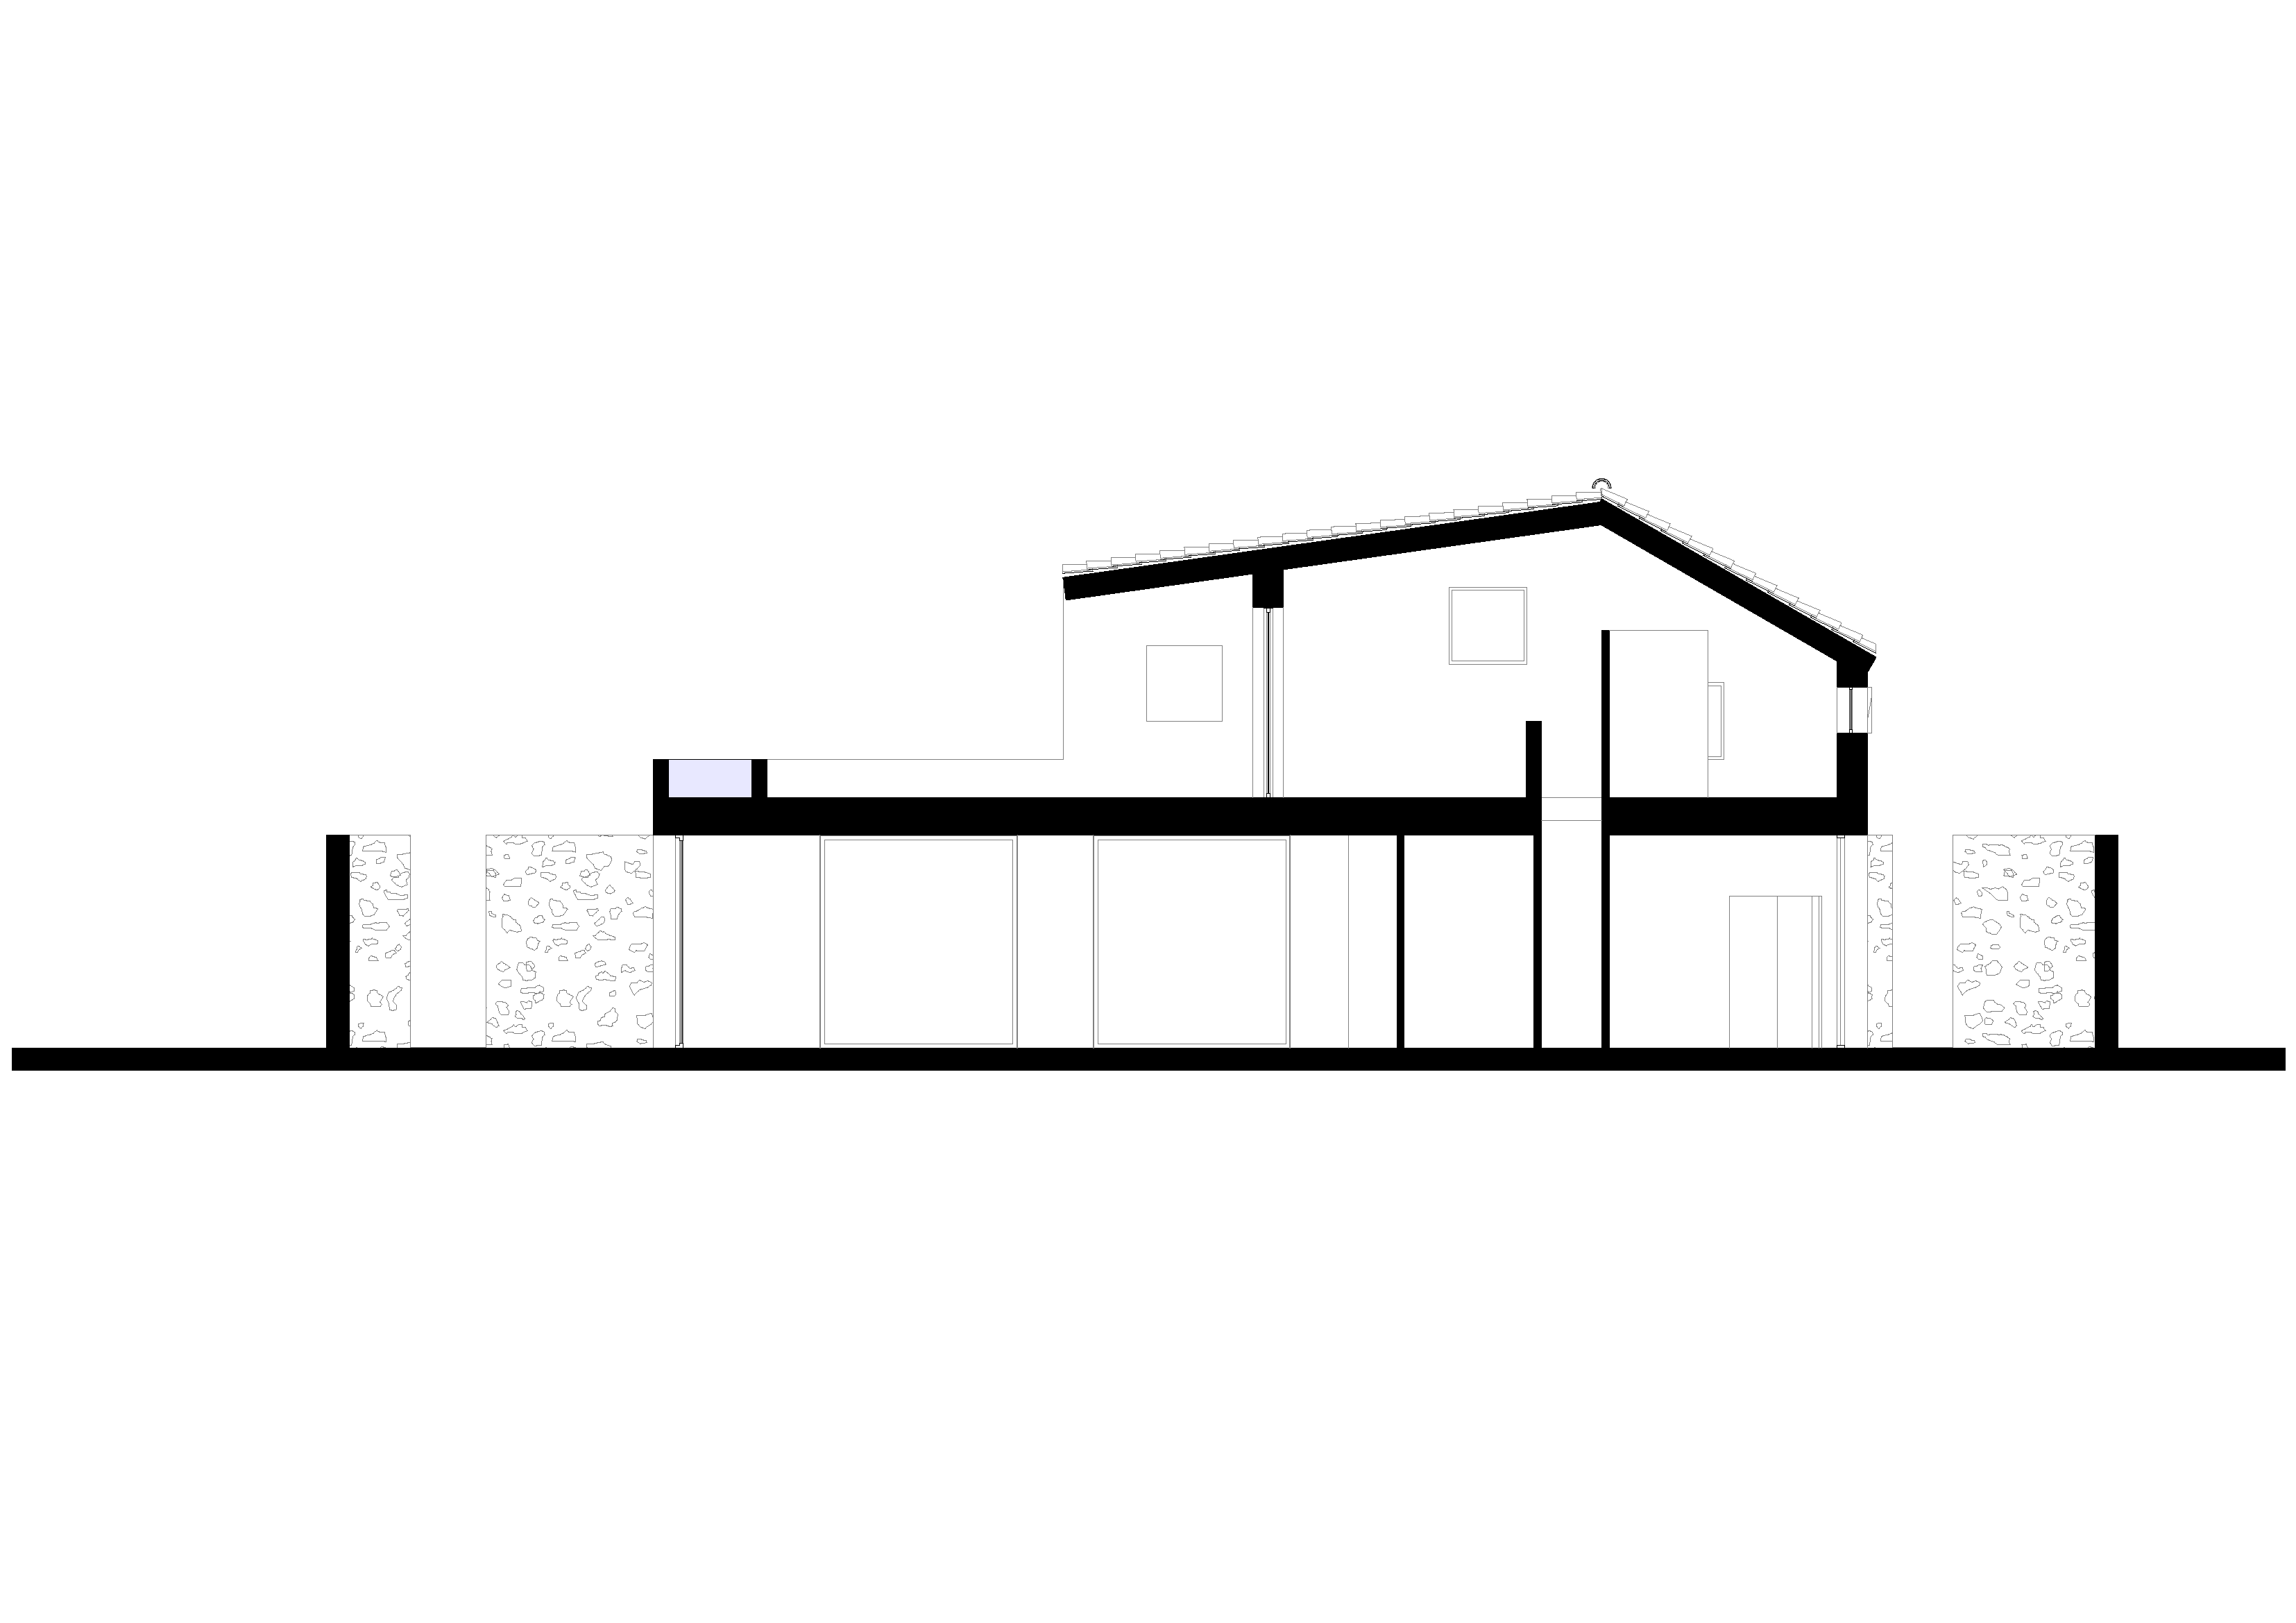 Diseño y plano arquitectónico del proyecto de vivienda de dos plantas de bajo consumo energético del estudio de arquitectura KLARQ.